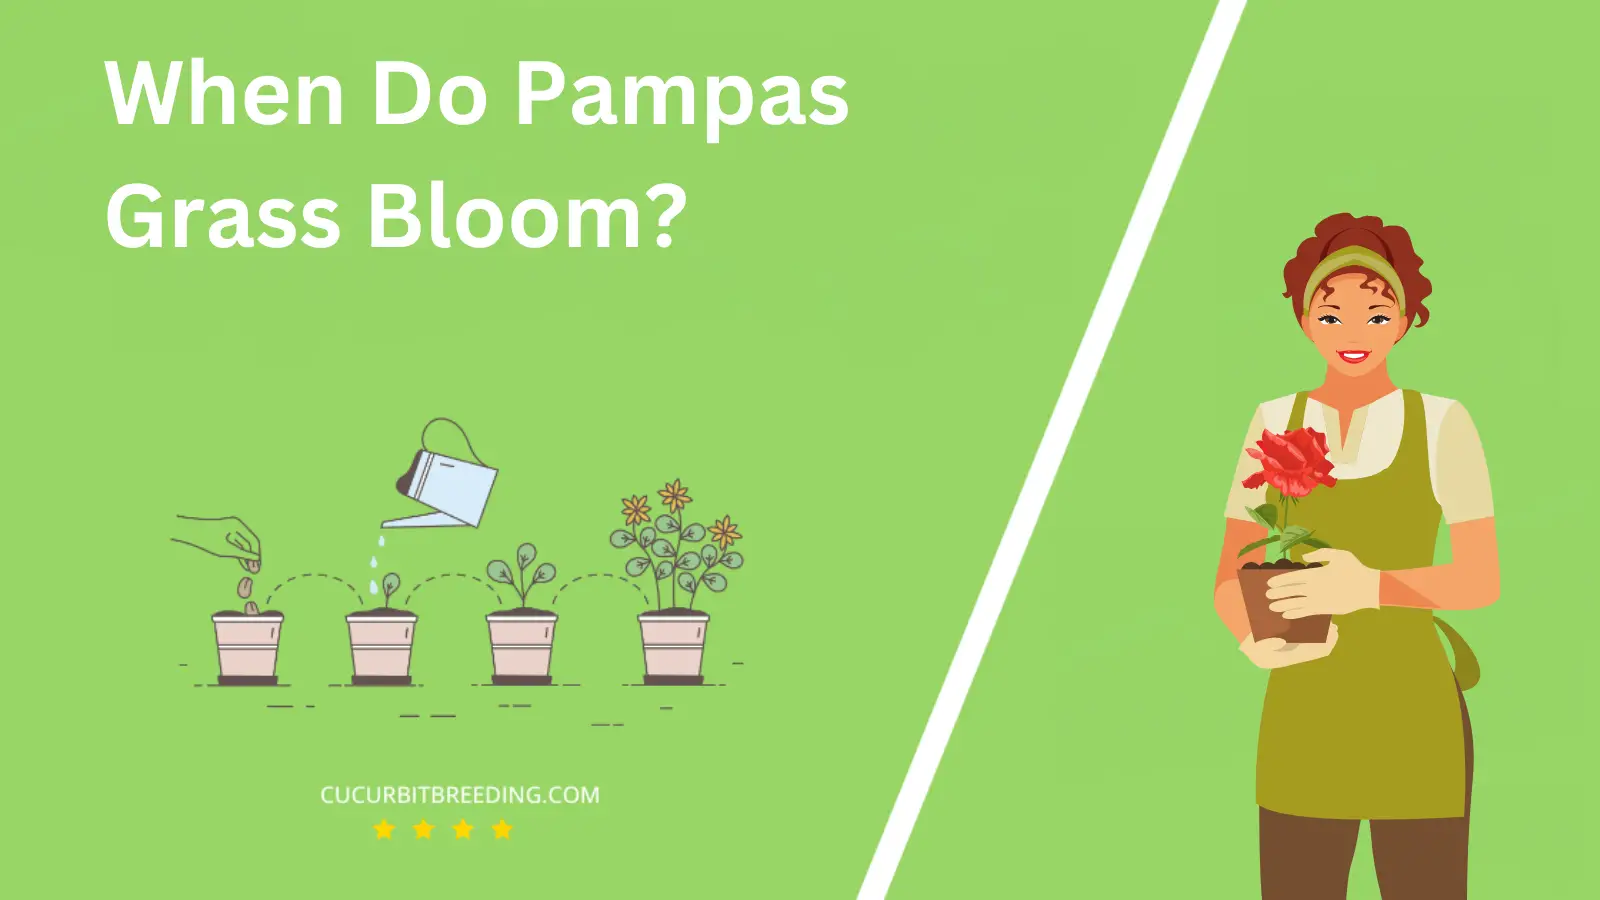 When Do Pampas Grass Bloom?